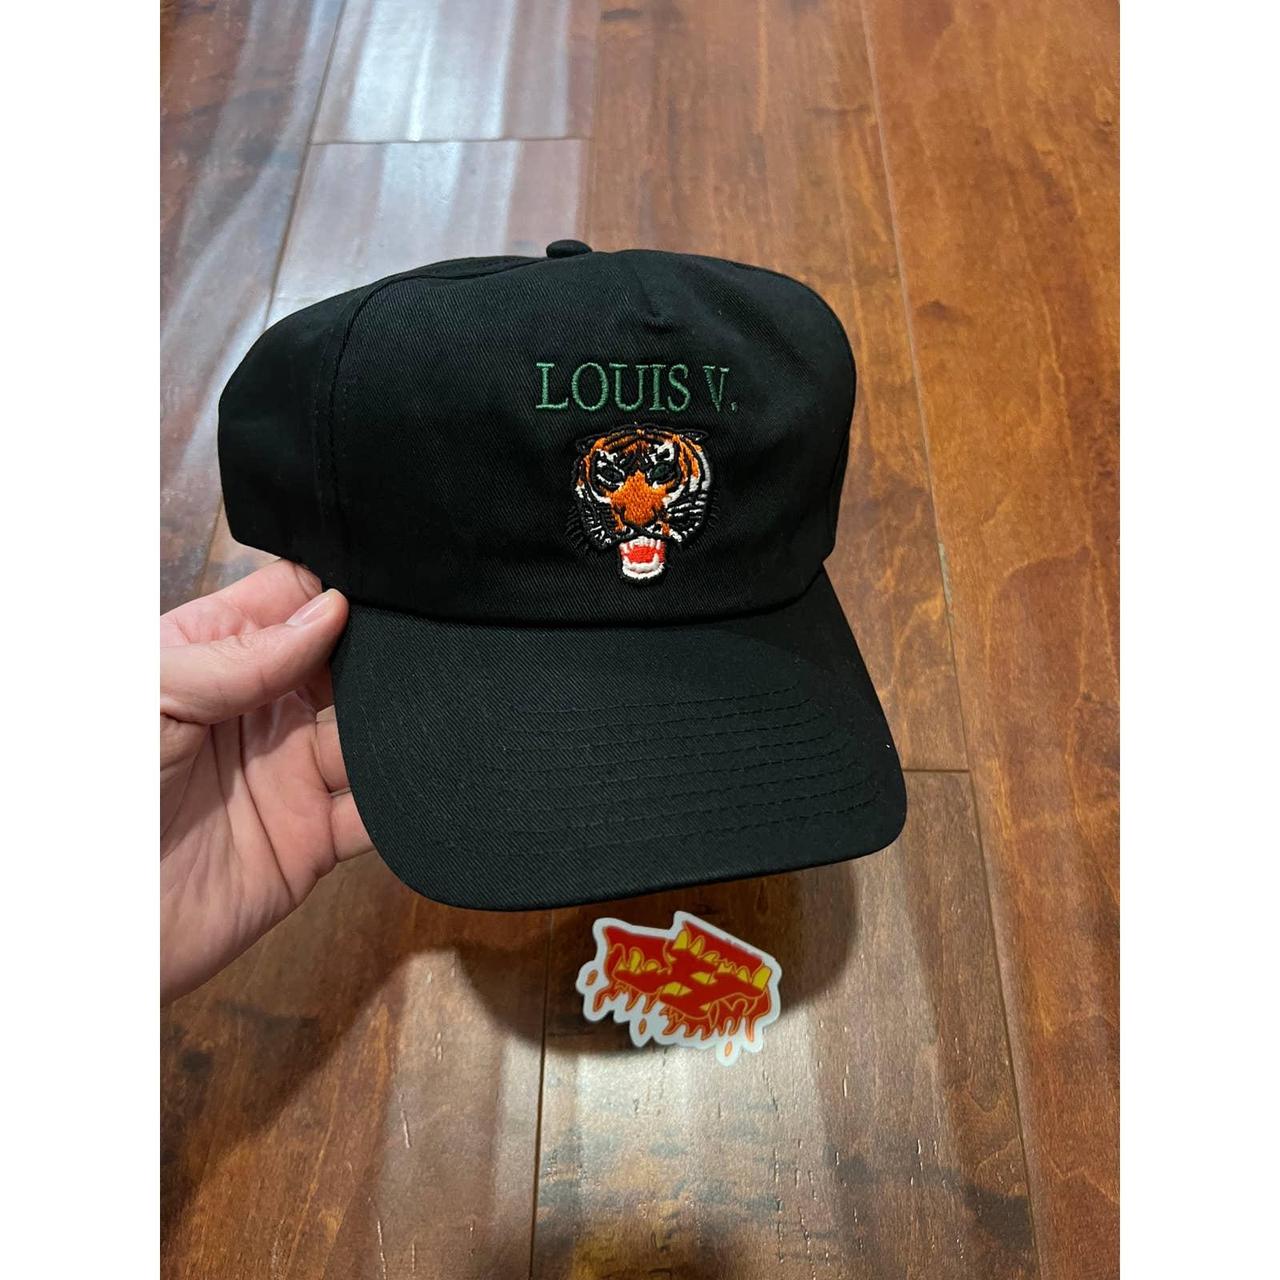 Market Men's Black and Orange Hat